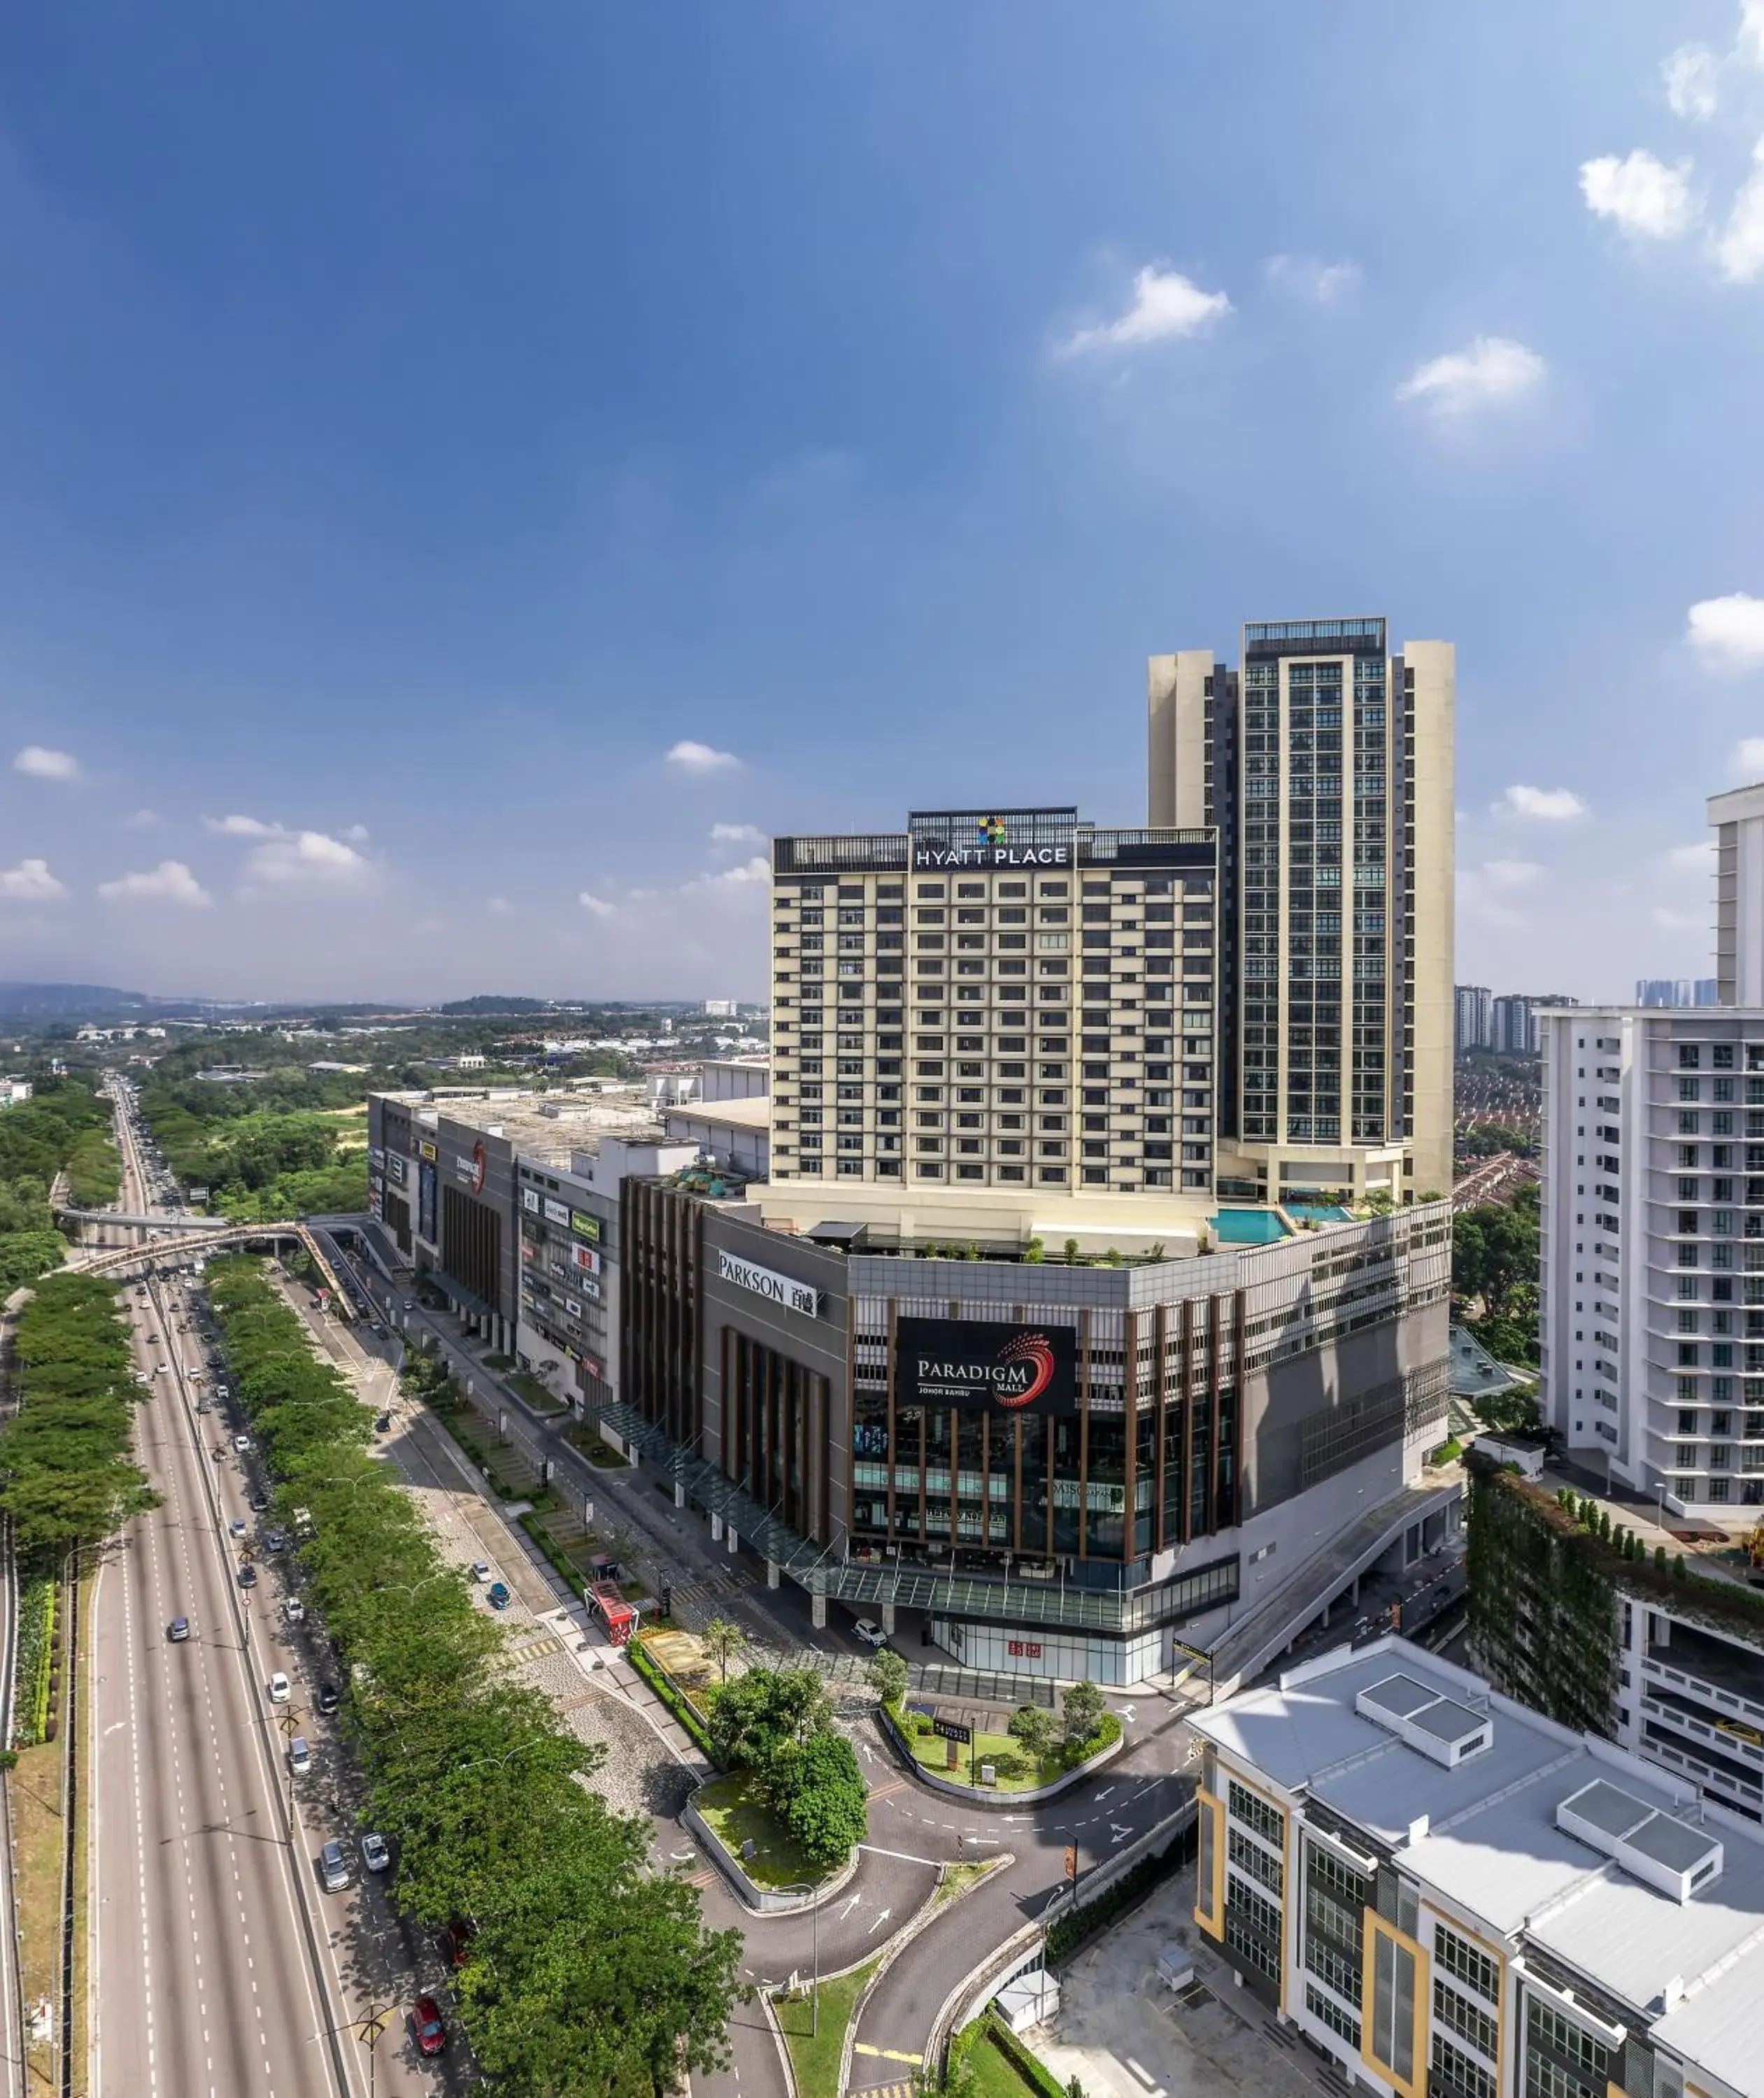 Property building in Hyatt Place Johor Bahru Paradigm Mall